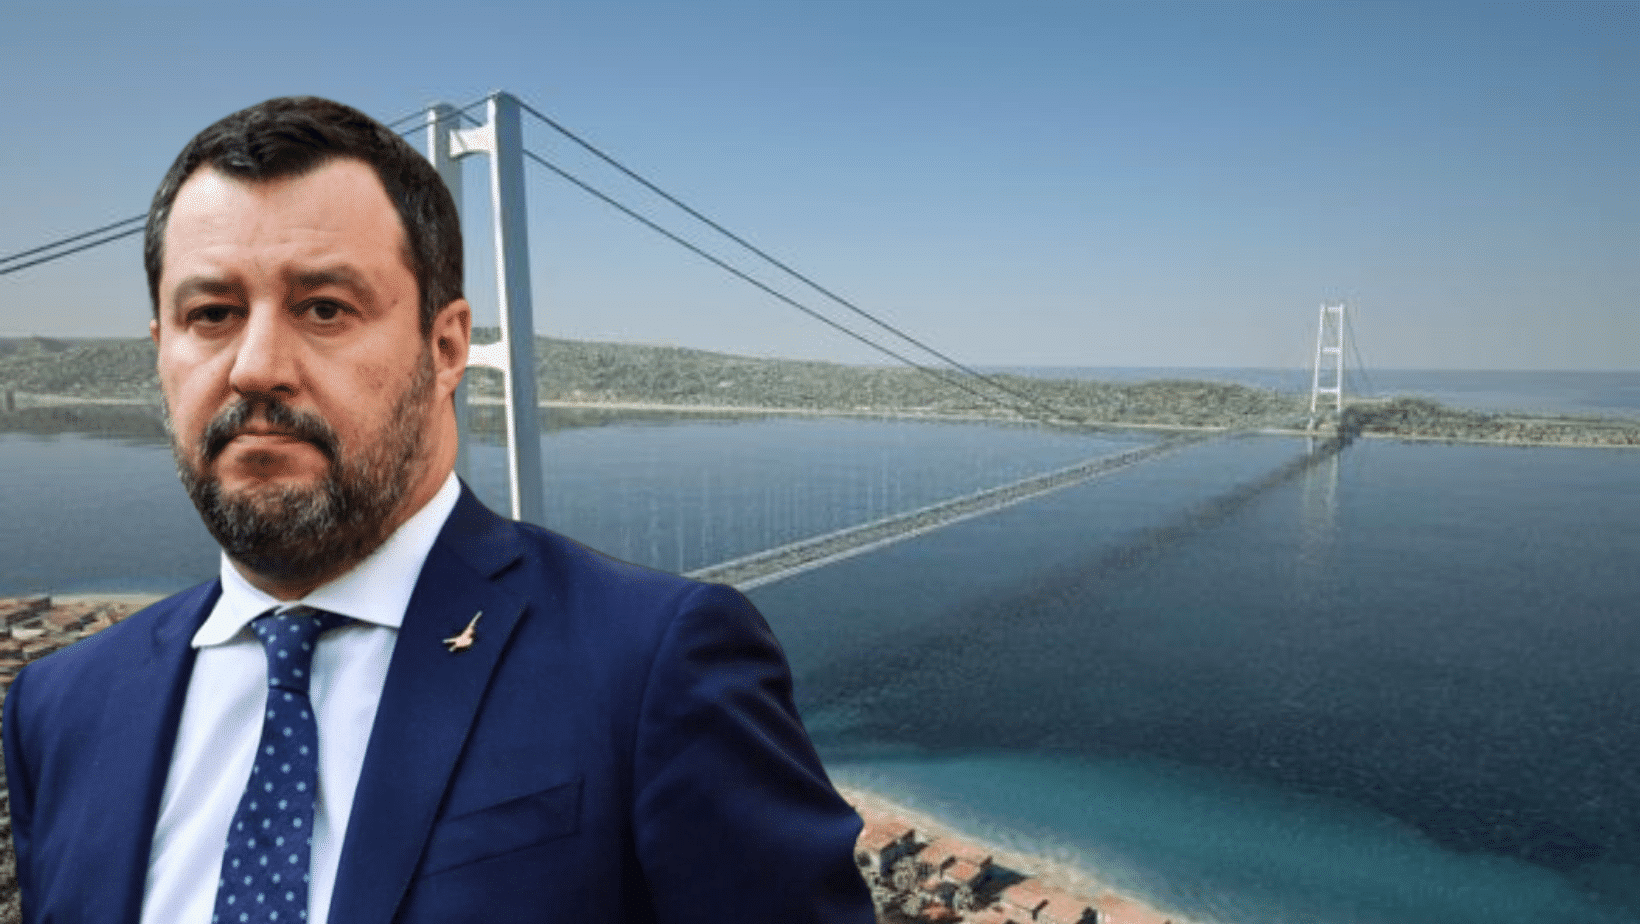 Ponte sullo Stretto, Salvini: “È un diritto degli italiani”, Bruxelles pronta a coprire il 50% dei costi per l’aggiornamento degli studi sull’impatto ambientale